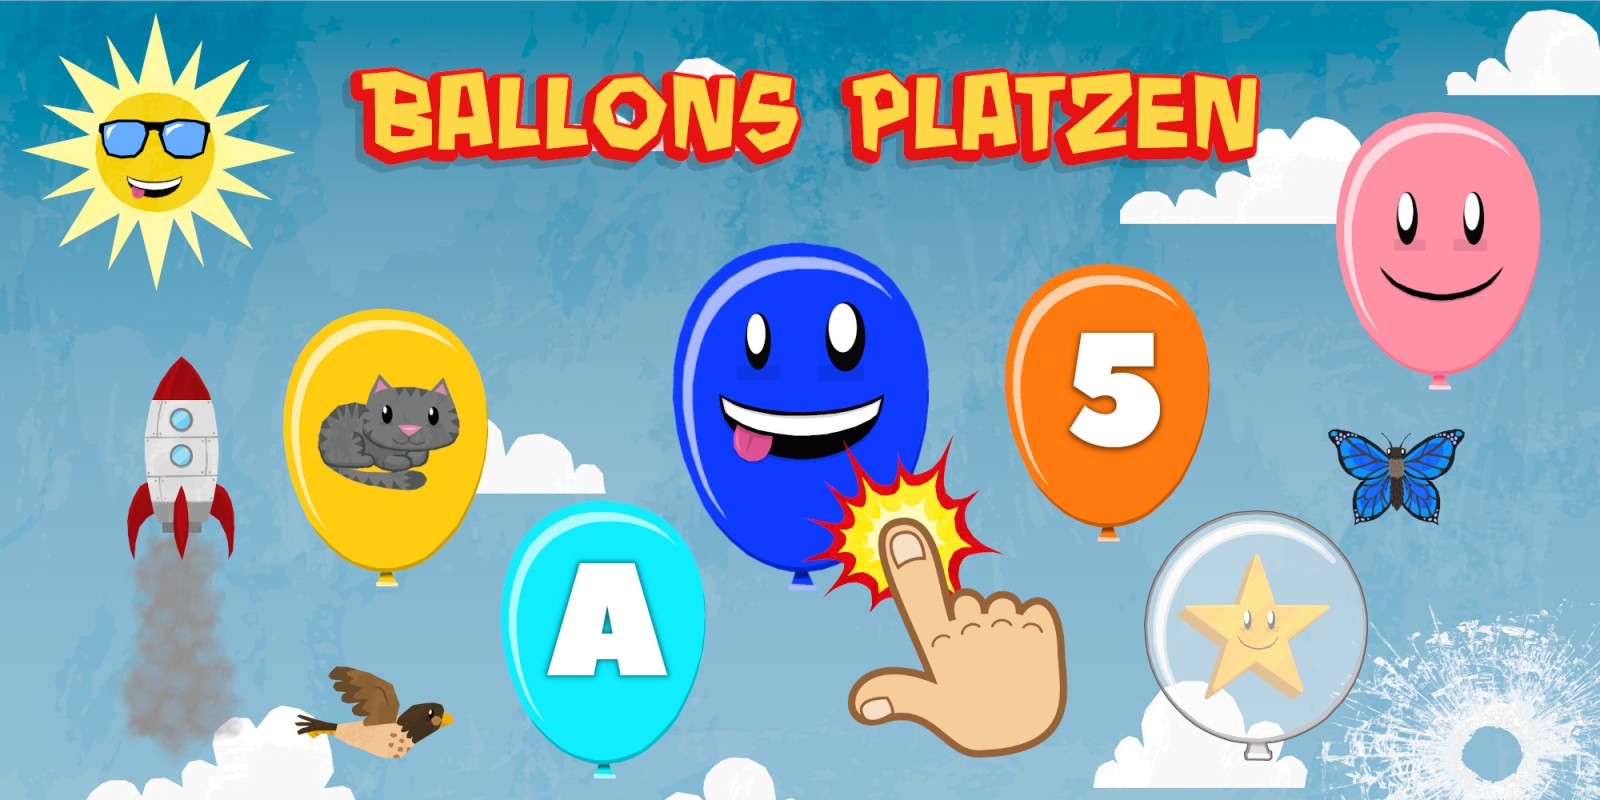 Ballons Platzen für Kinder & Kleinkinder - Zahlen, Buchstaben, Farben & Tiere lernen